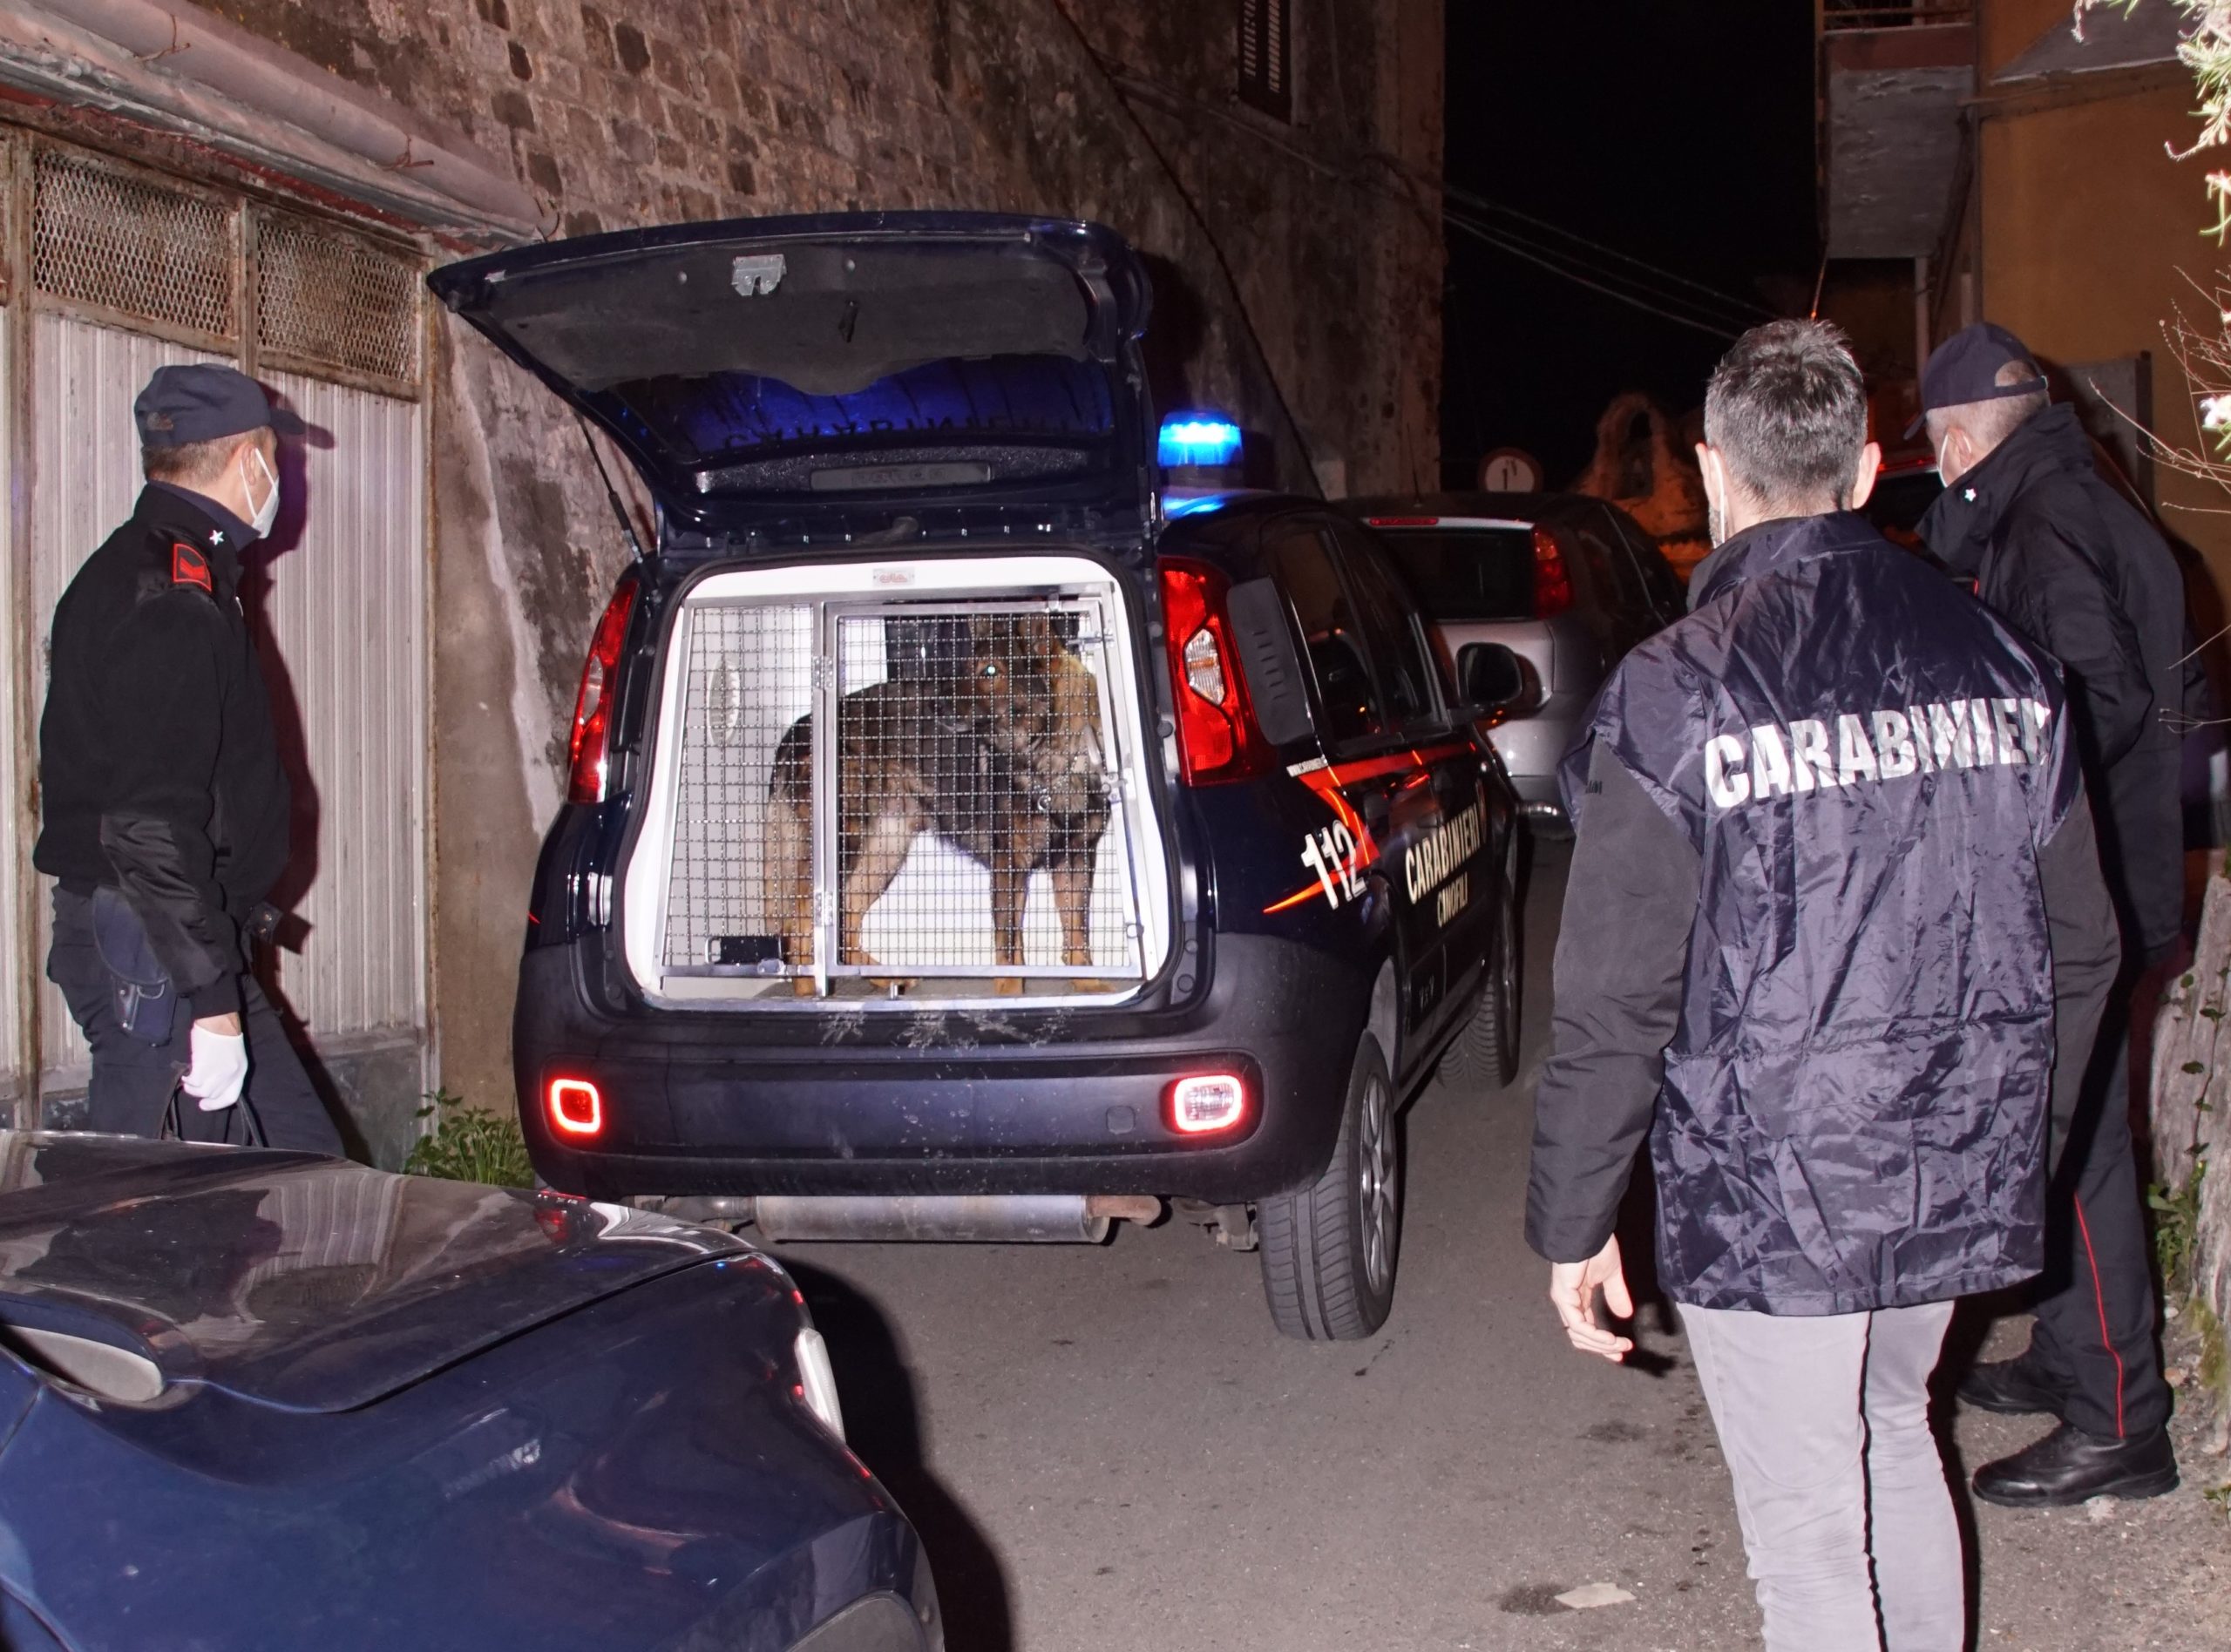 Eroina, cocaina e marijuana sulla costa metapontina dall’Albania. 18 arresti nell’operazione Metalba del R.O.S.